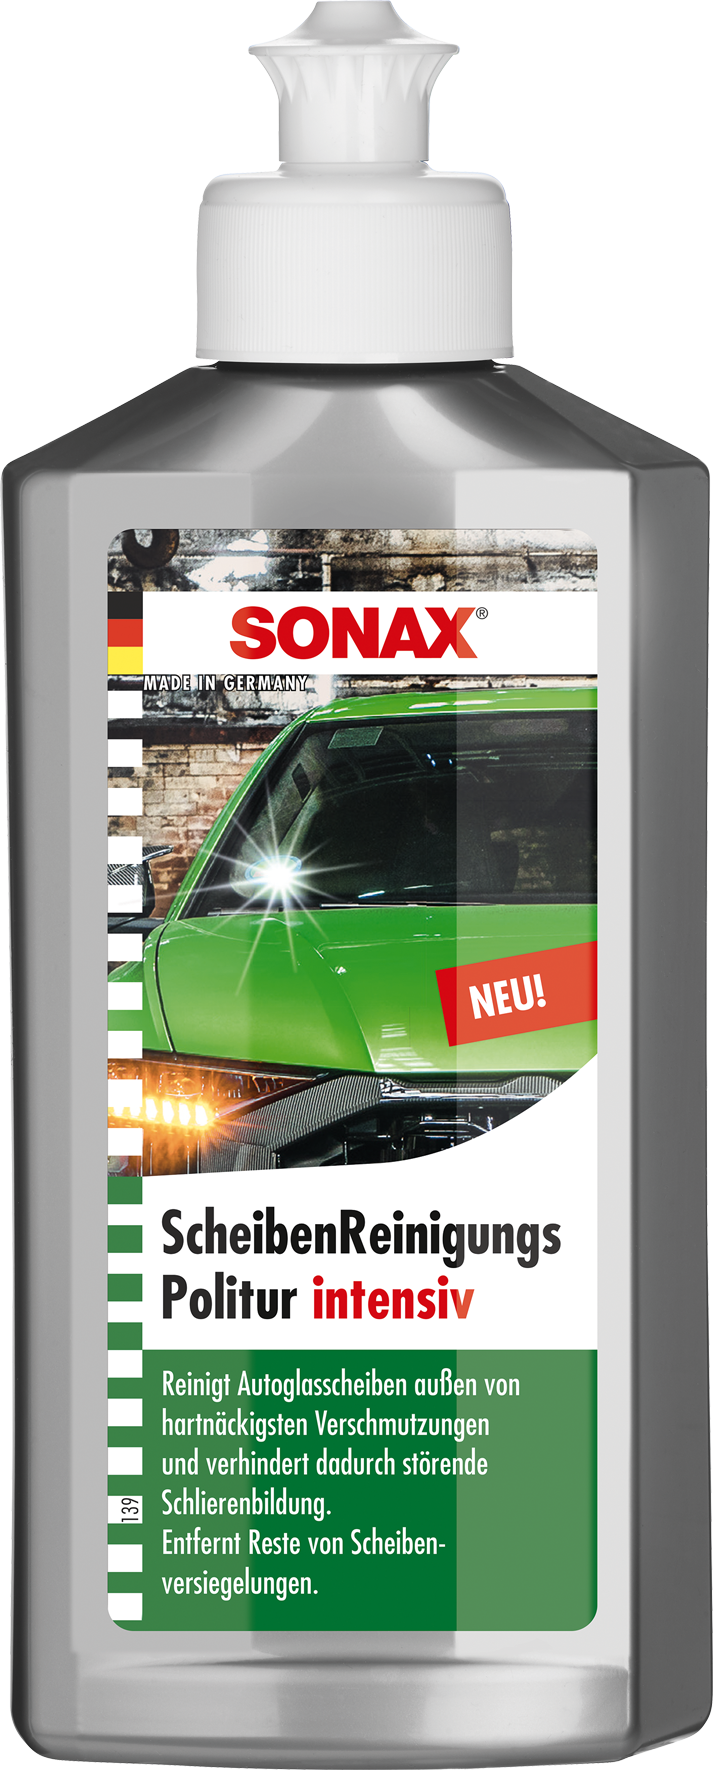 Sonax Scheiben-Reinigungspolitur intensiv Inhalt: 250 ml